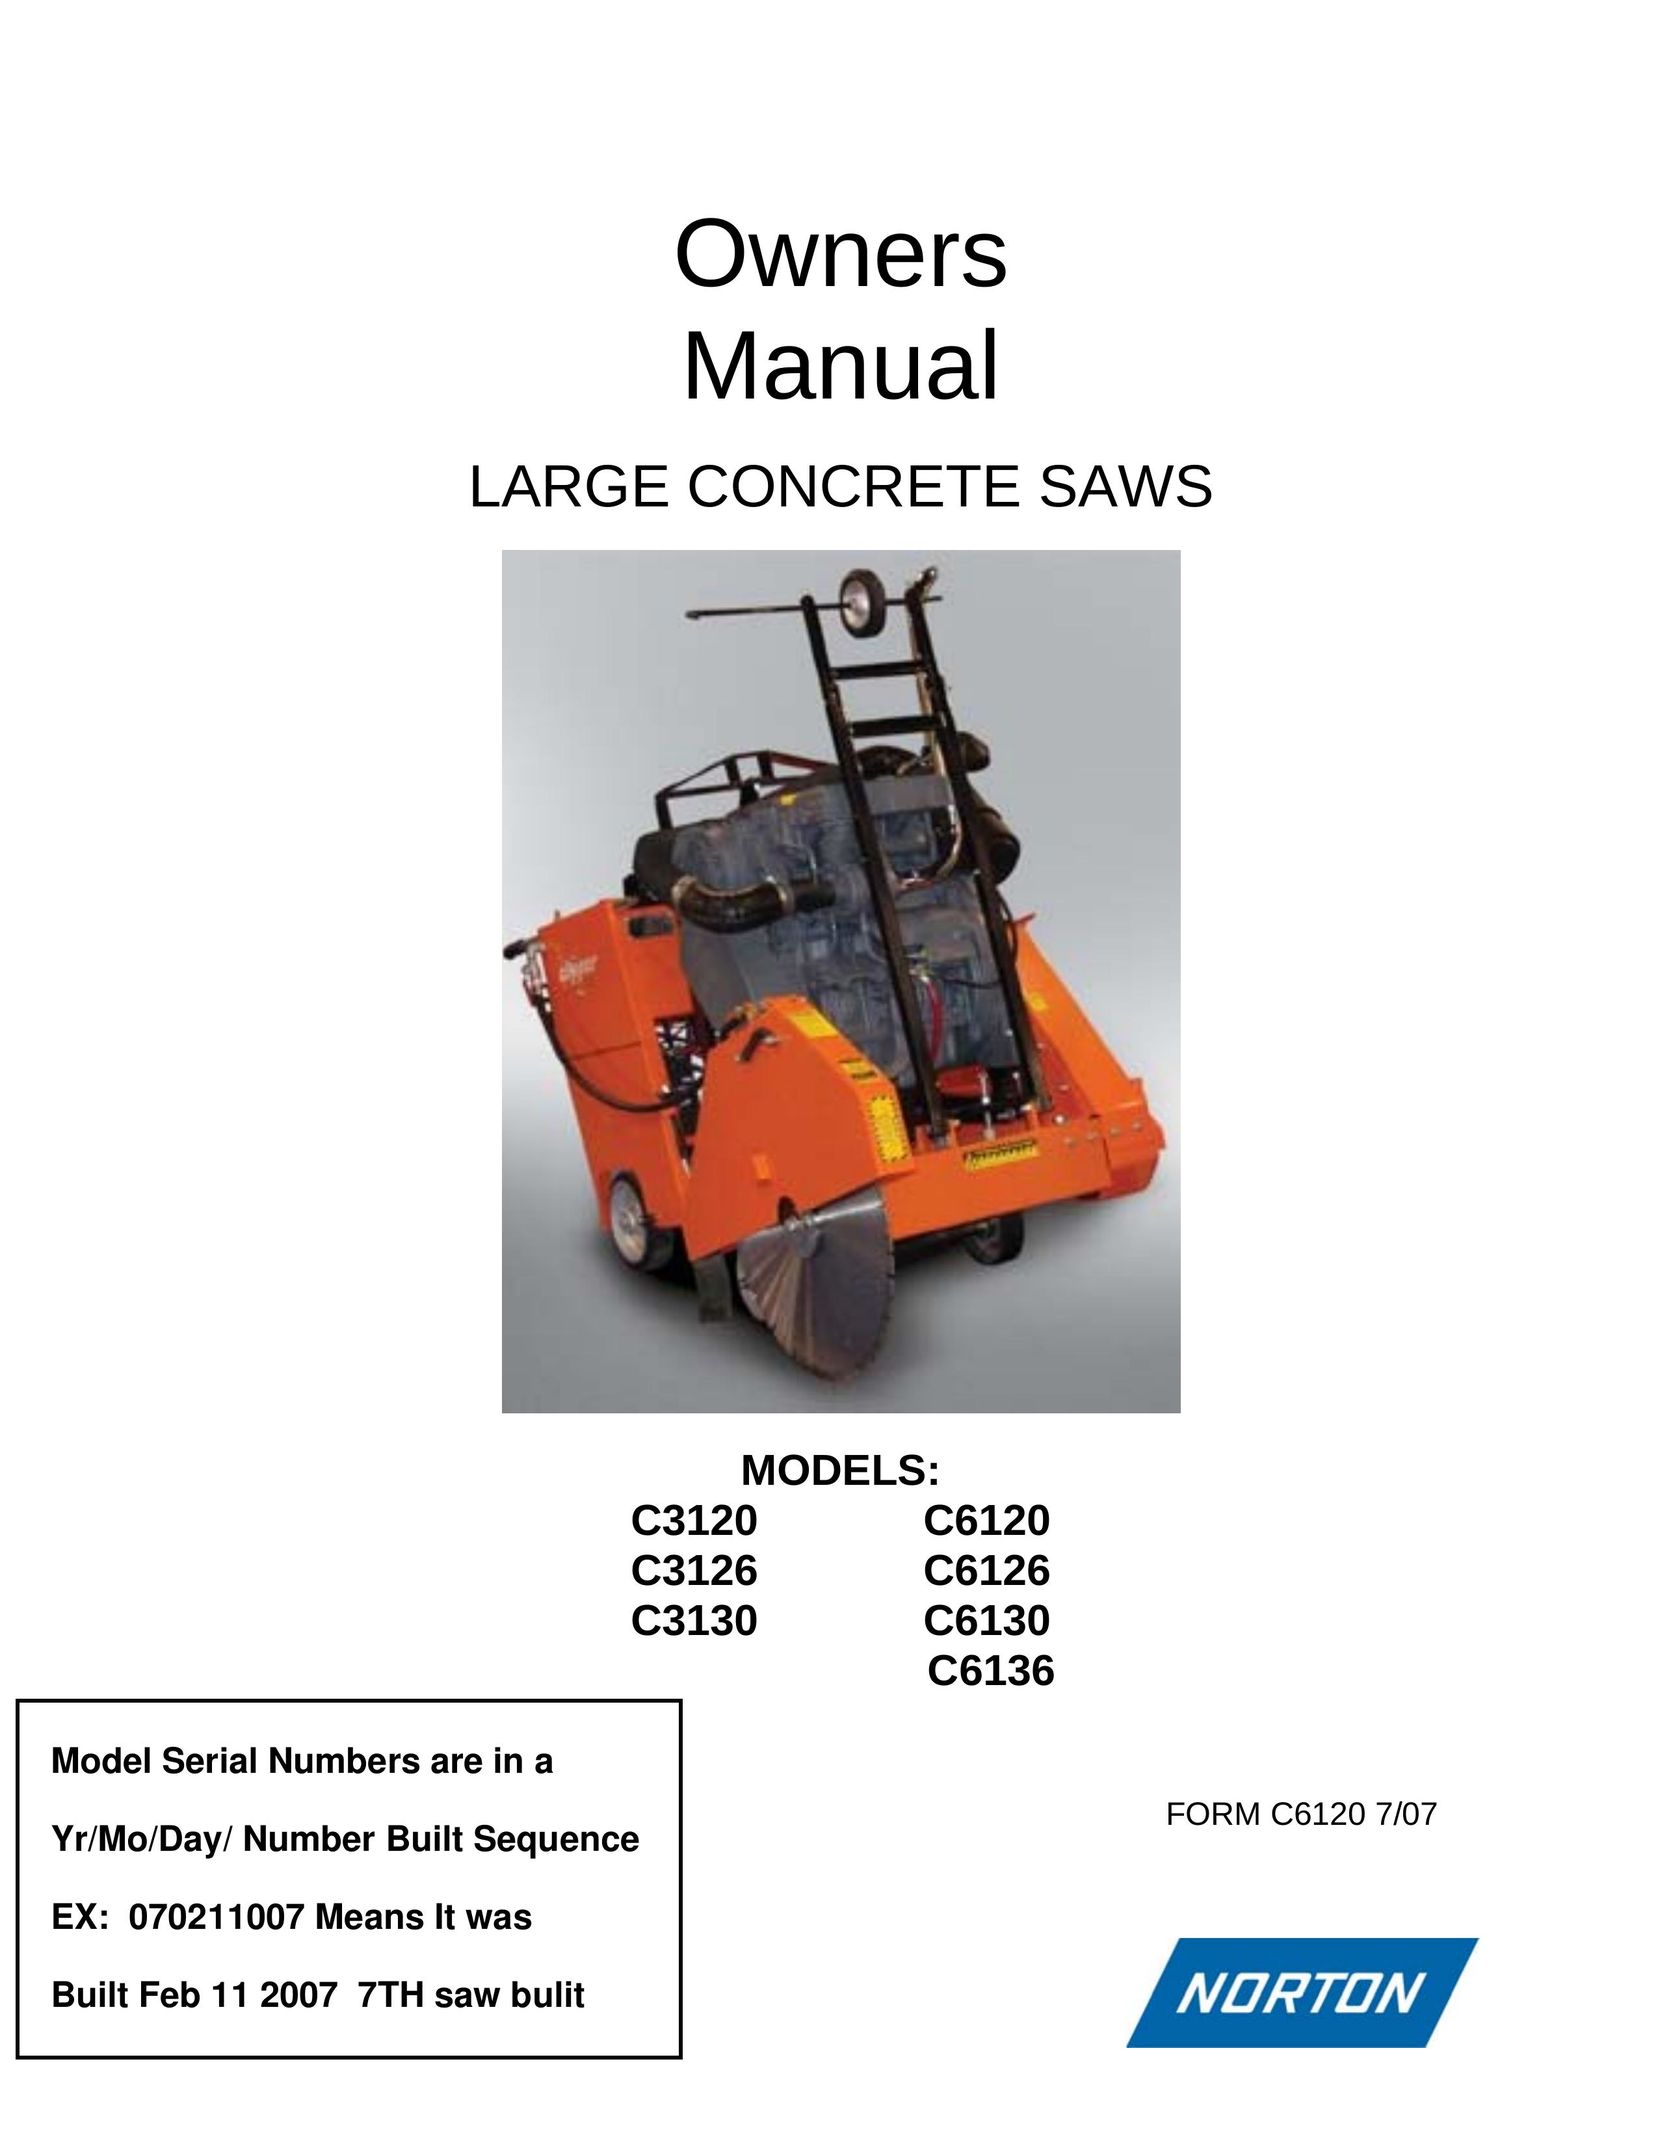 Norton Abrasives C6136 Saw User Manual